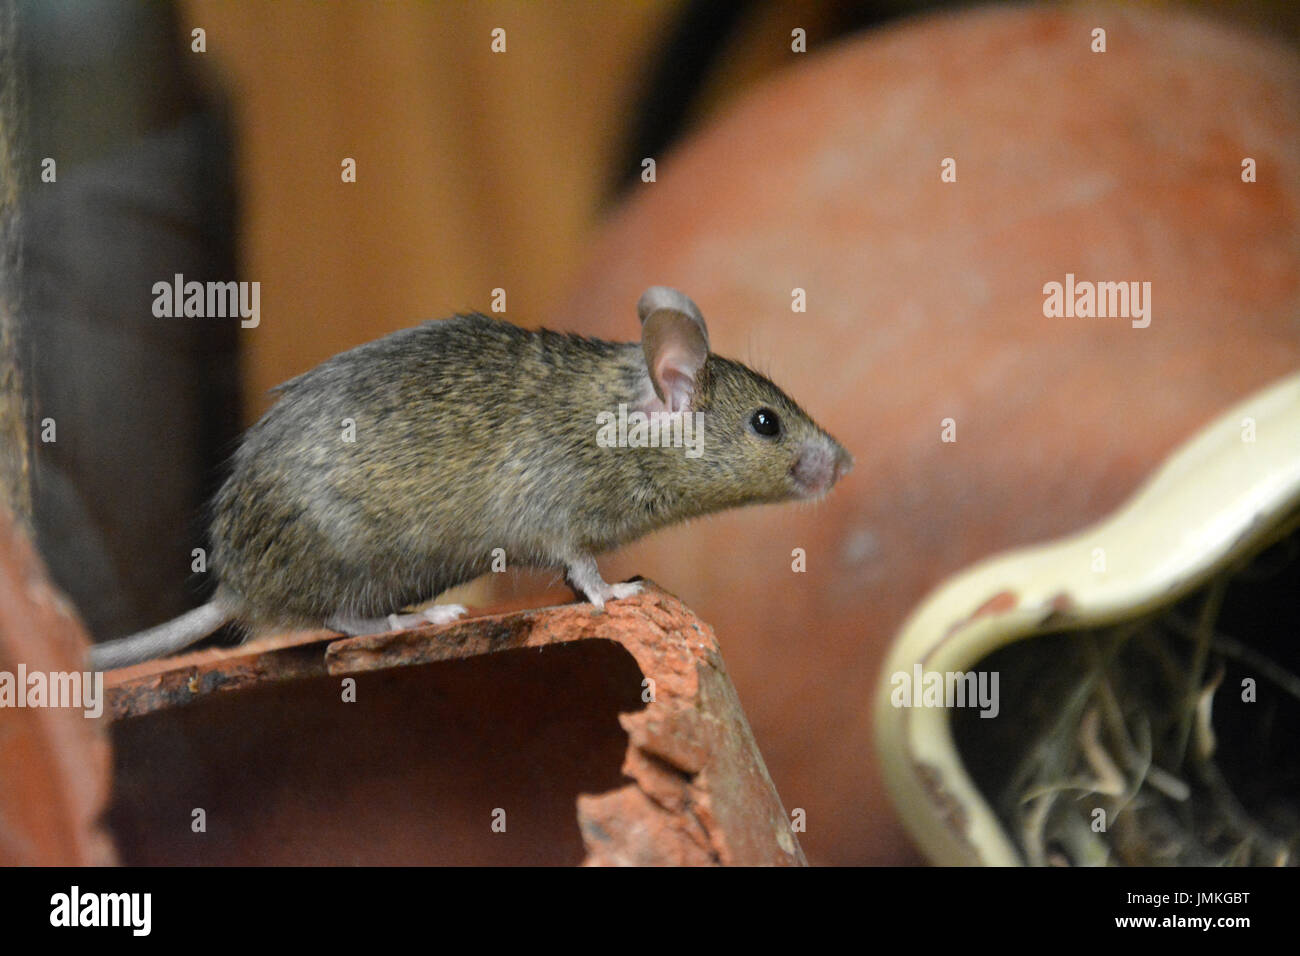 Casa del ratón (Mus musculus) - descansando sobre una olla de barro Foto de stock